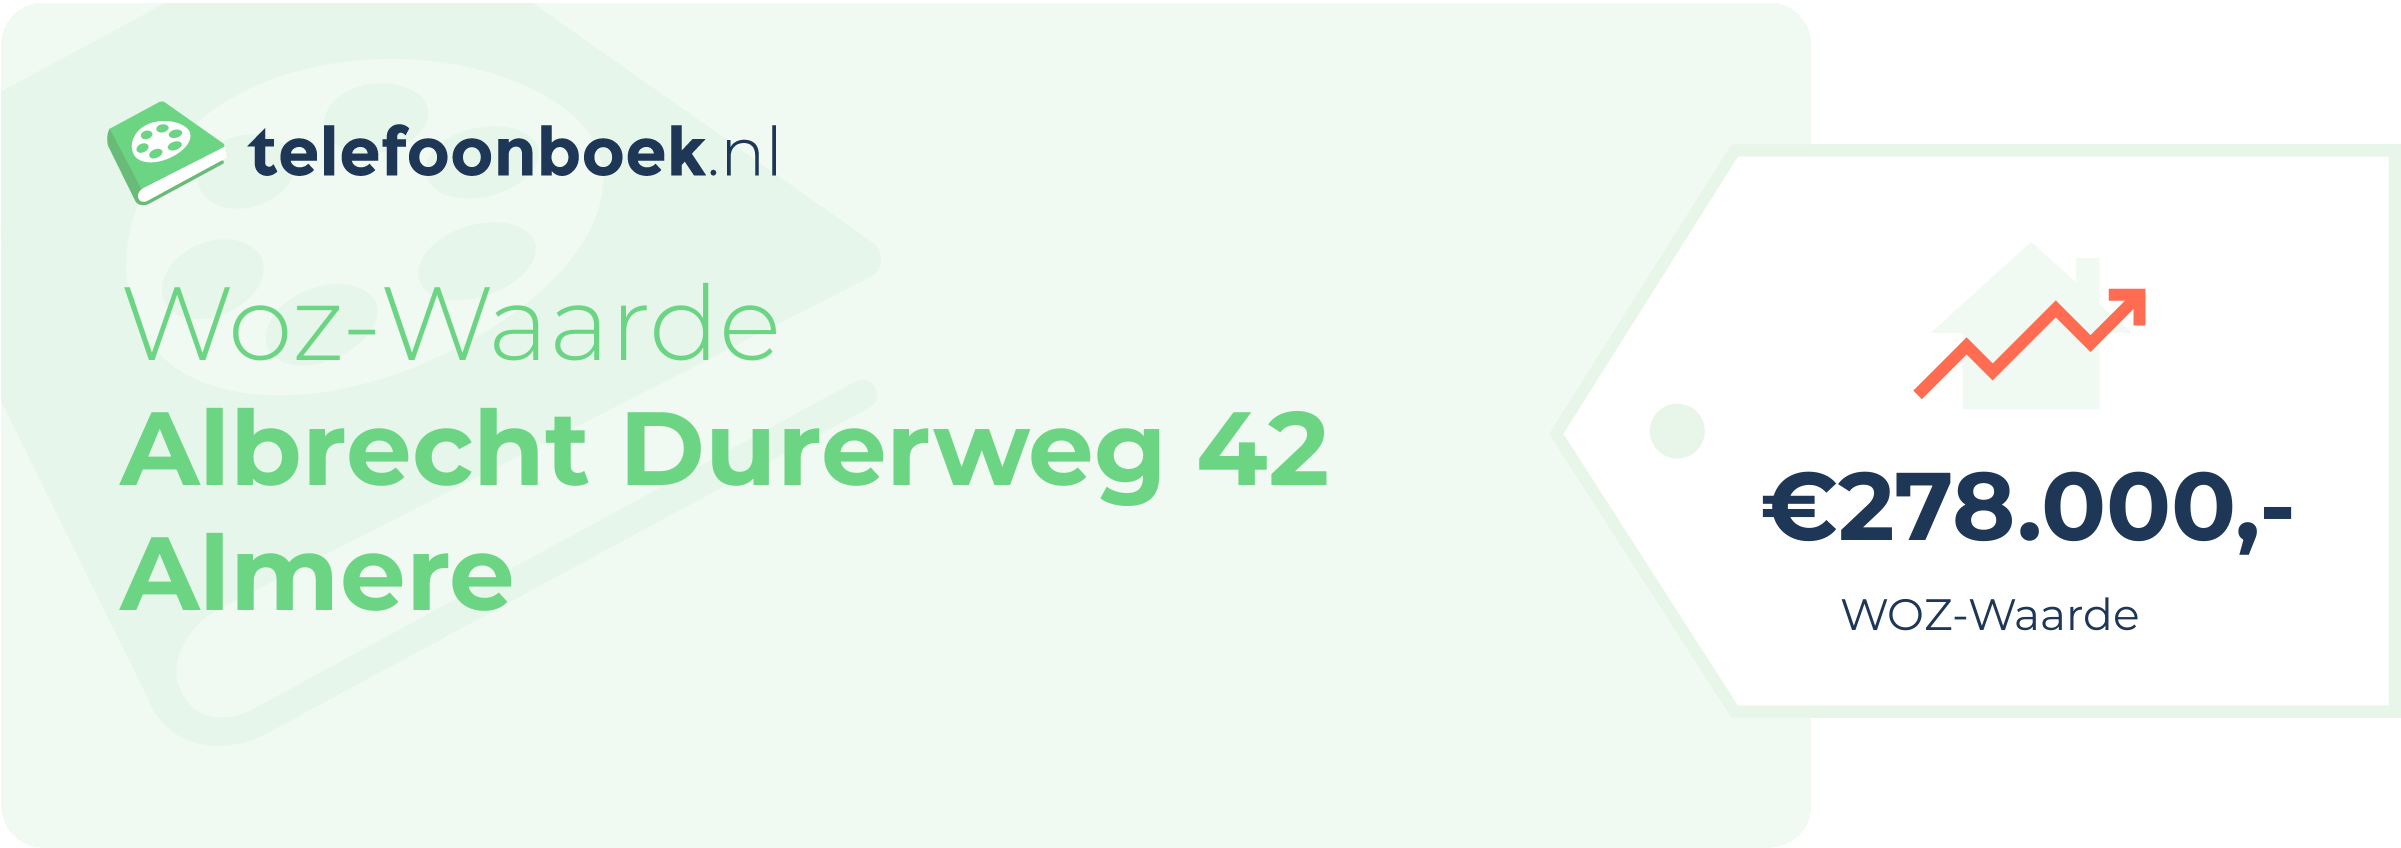 WOZ-waarde Albrecht Durerweg 42 Almere